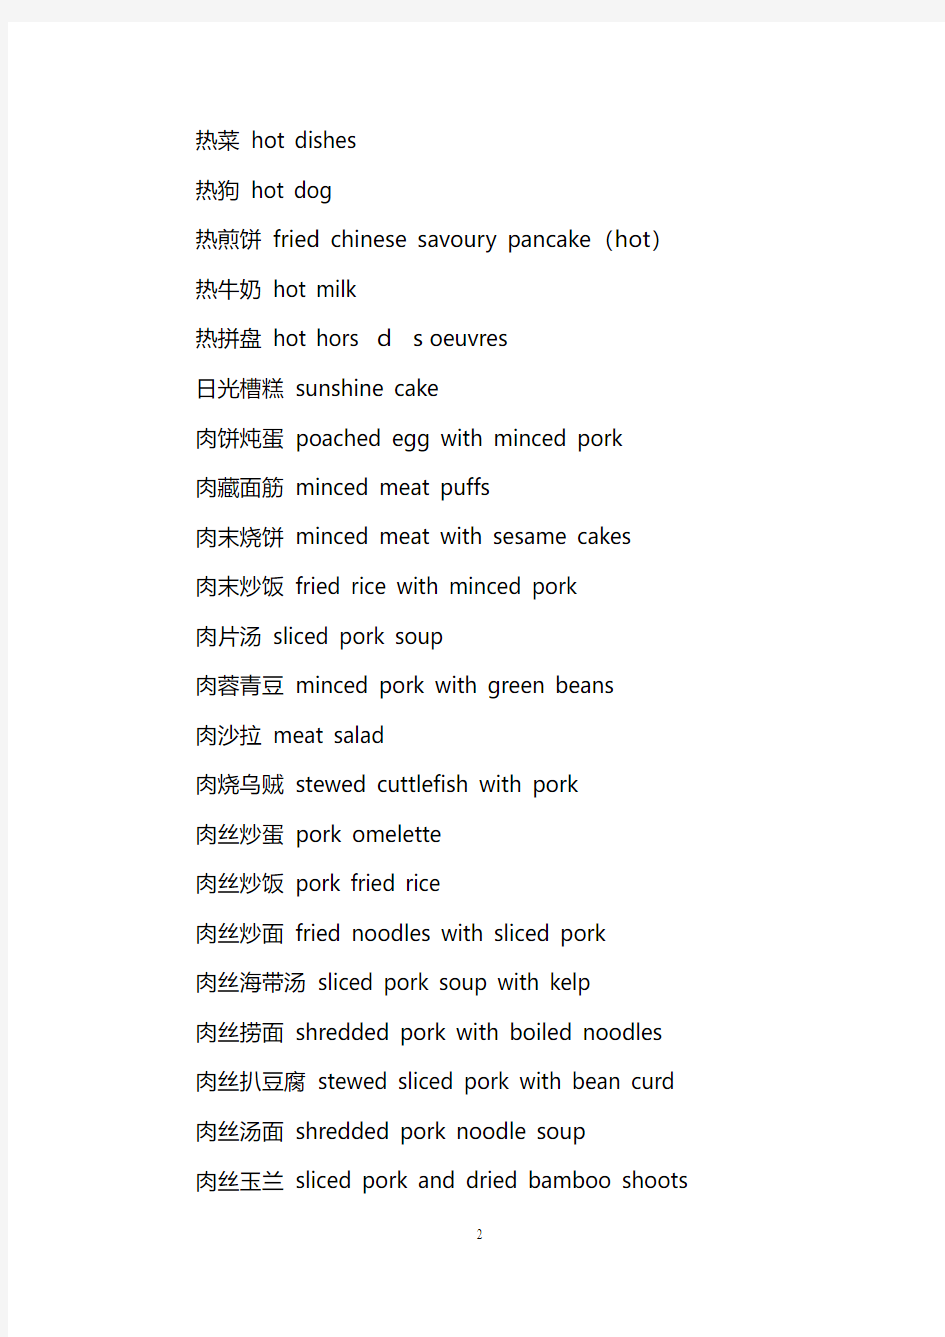 中文饮食、菜名词汇五